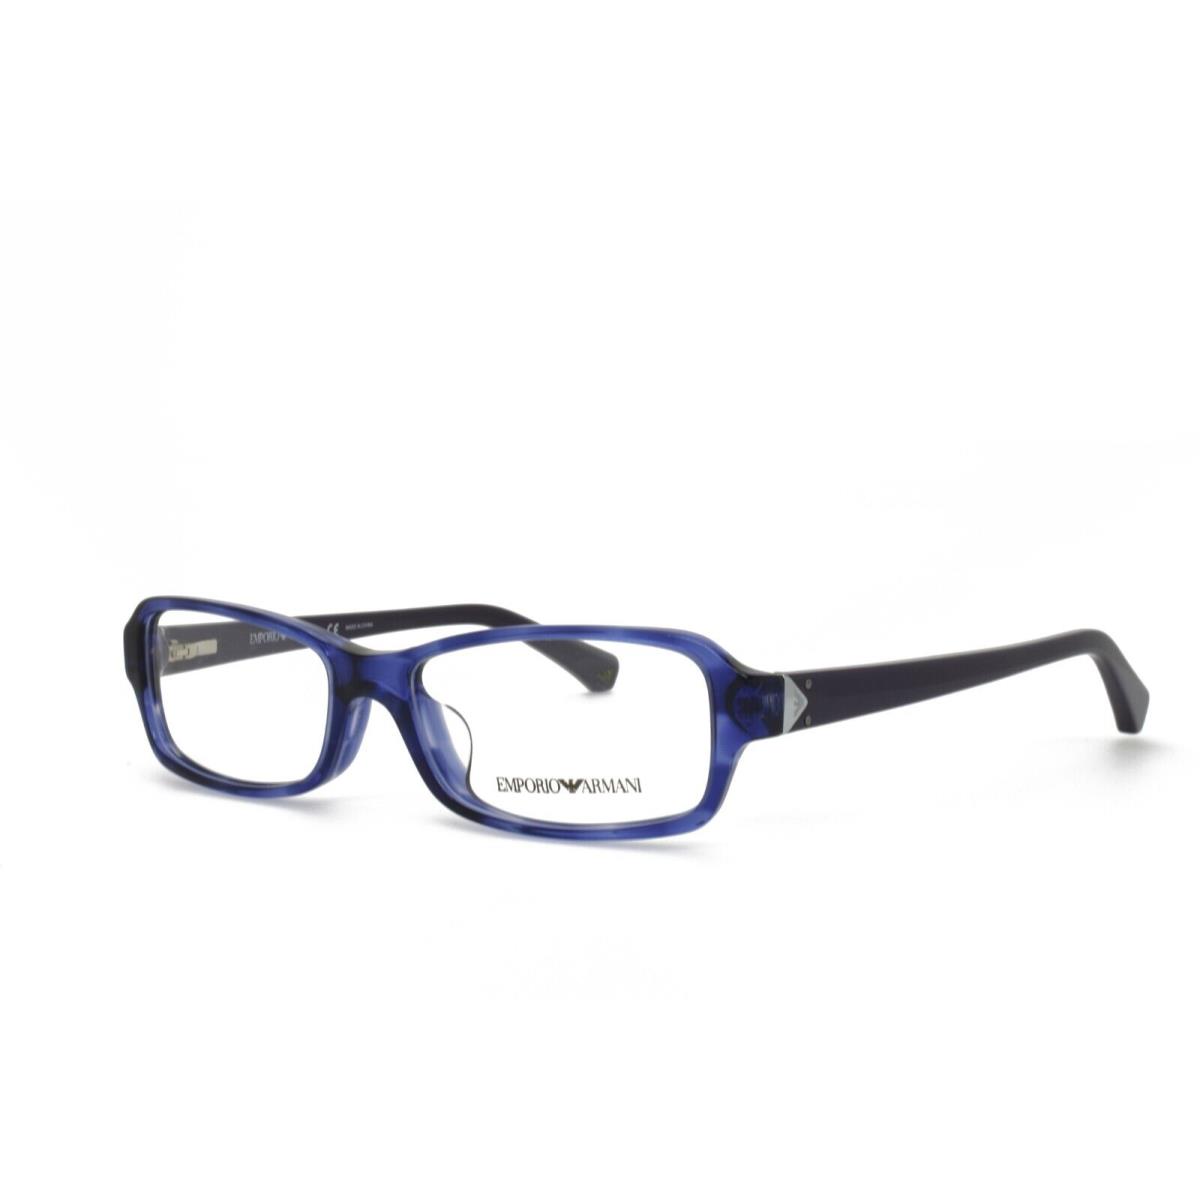 Emporio Armani 3016F 5098 53-16-140 Purple Eyeglasses Frames